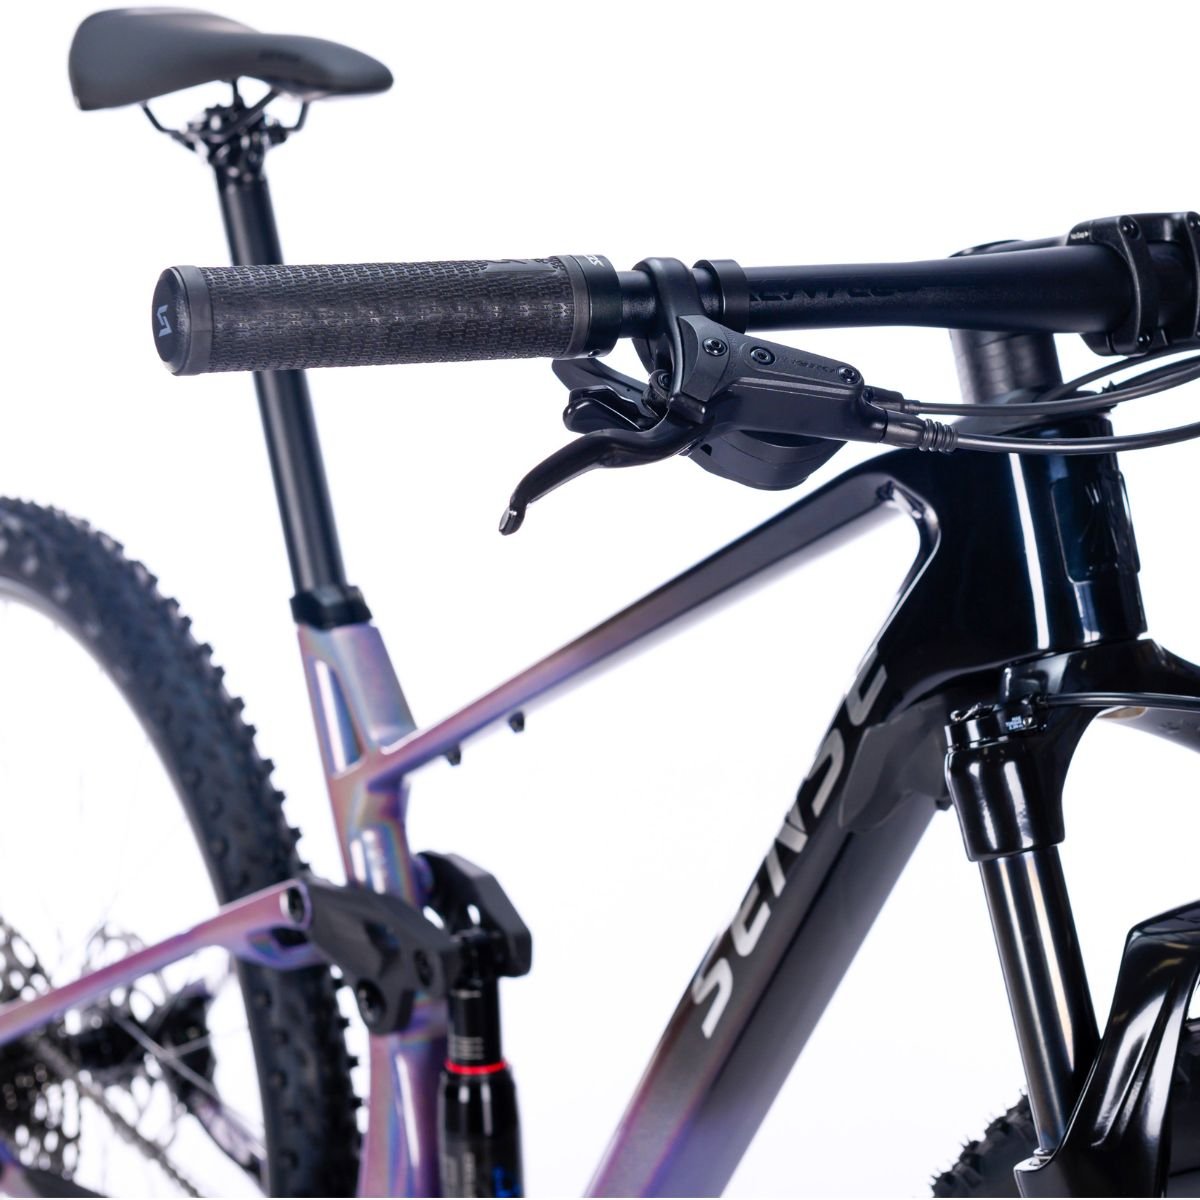 Bicicleta Full Sense Invictus Sport Carbono Shimano Cues:roxo+preto/15 - 4